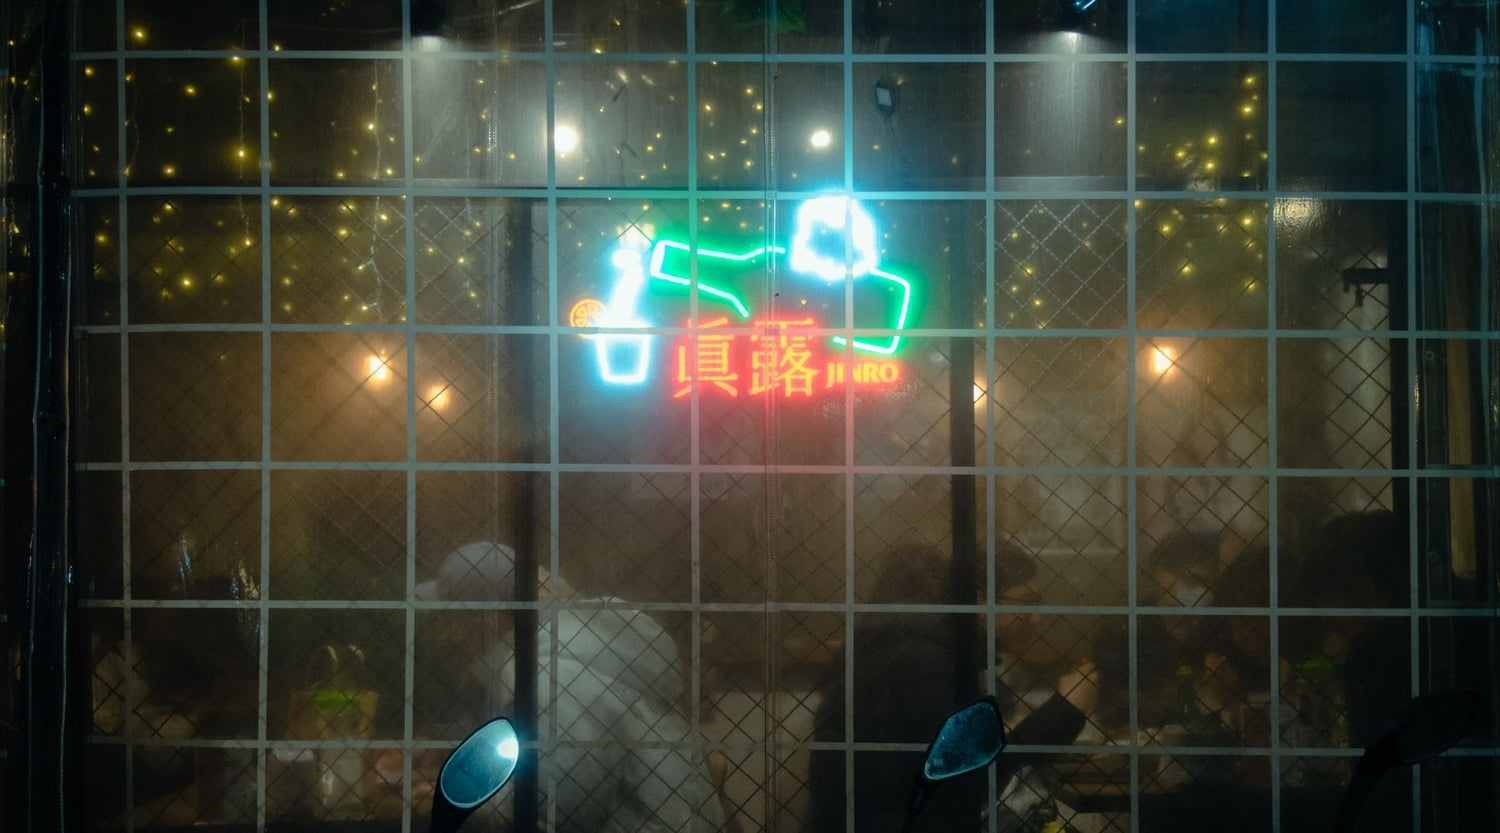 restaurant neon sign drink